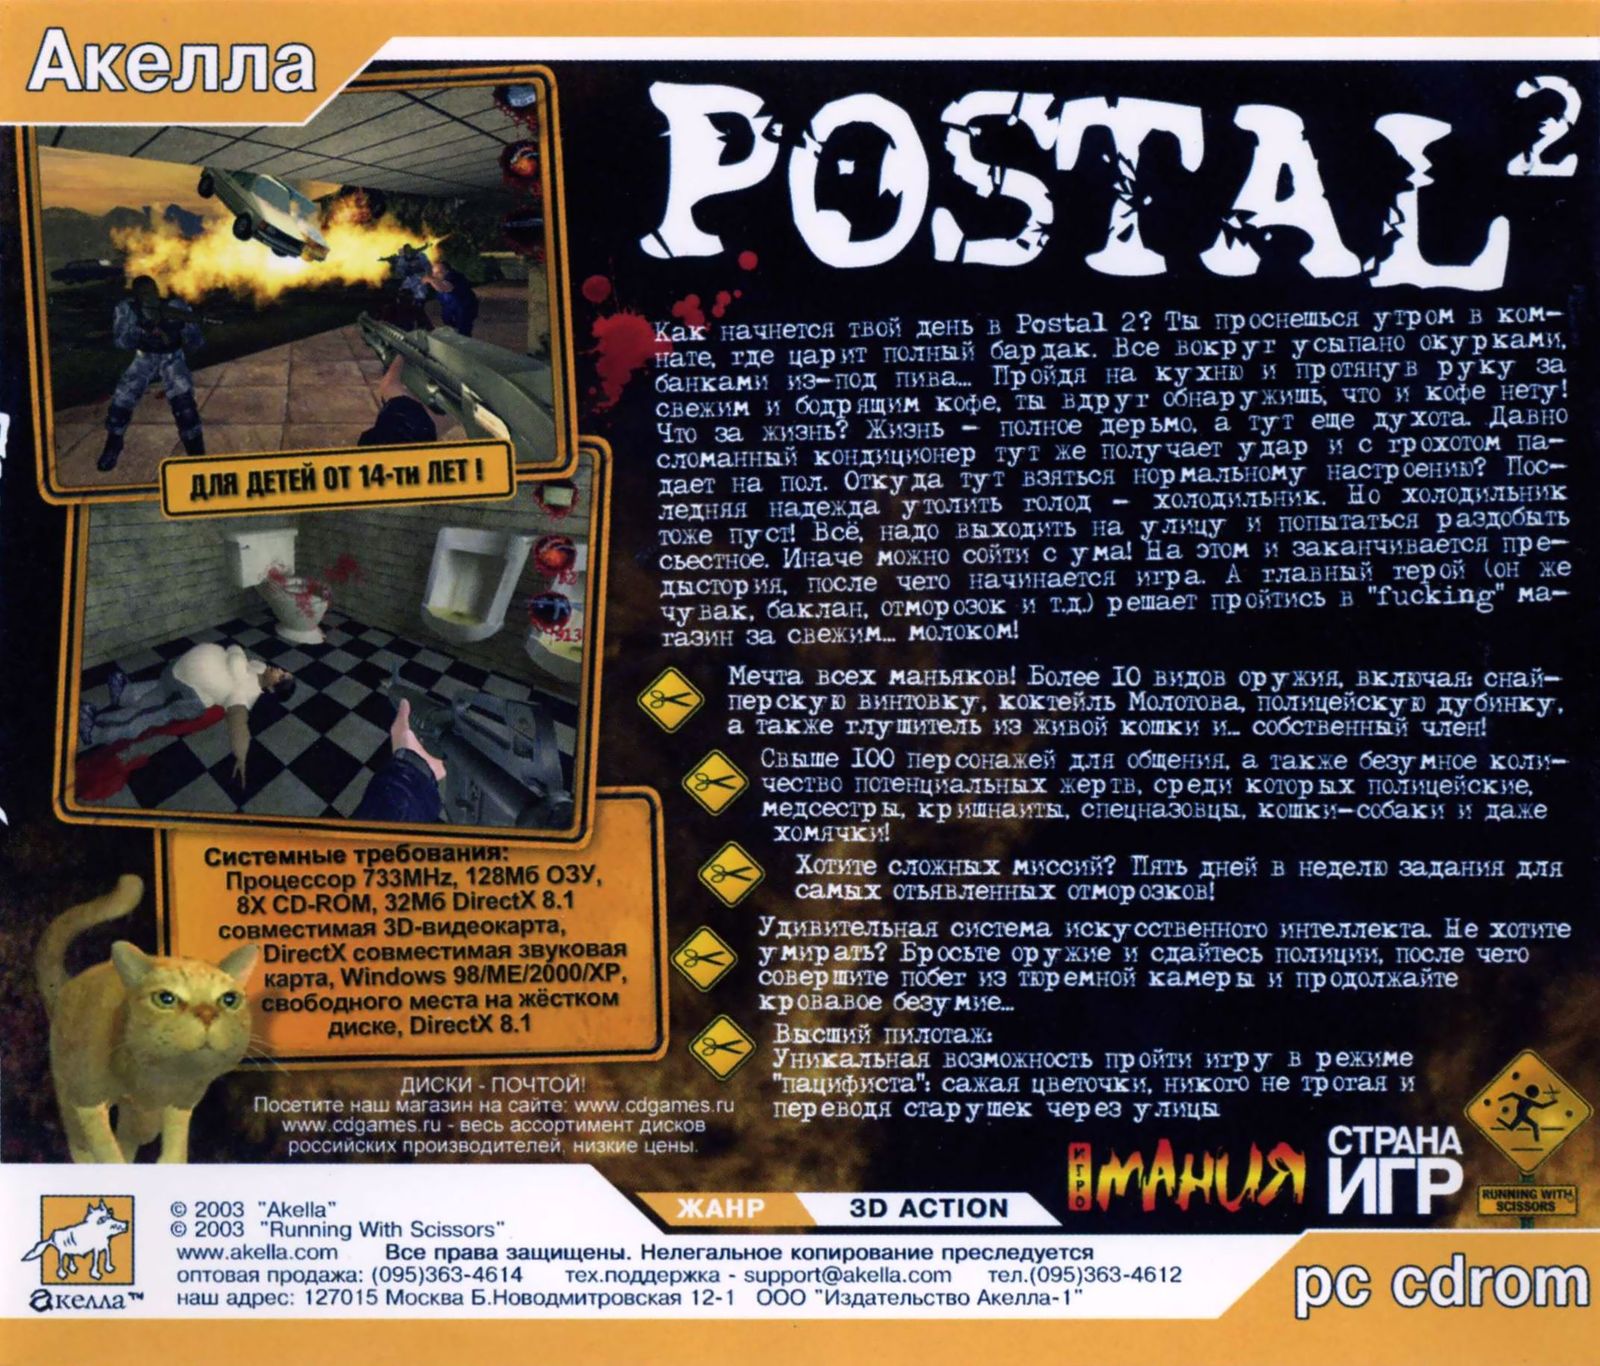 Postal awp delete review оружие фото 76